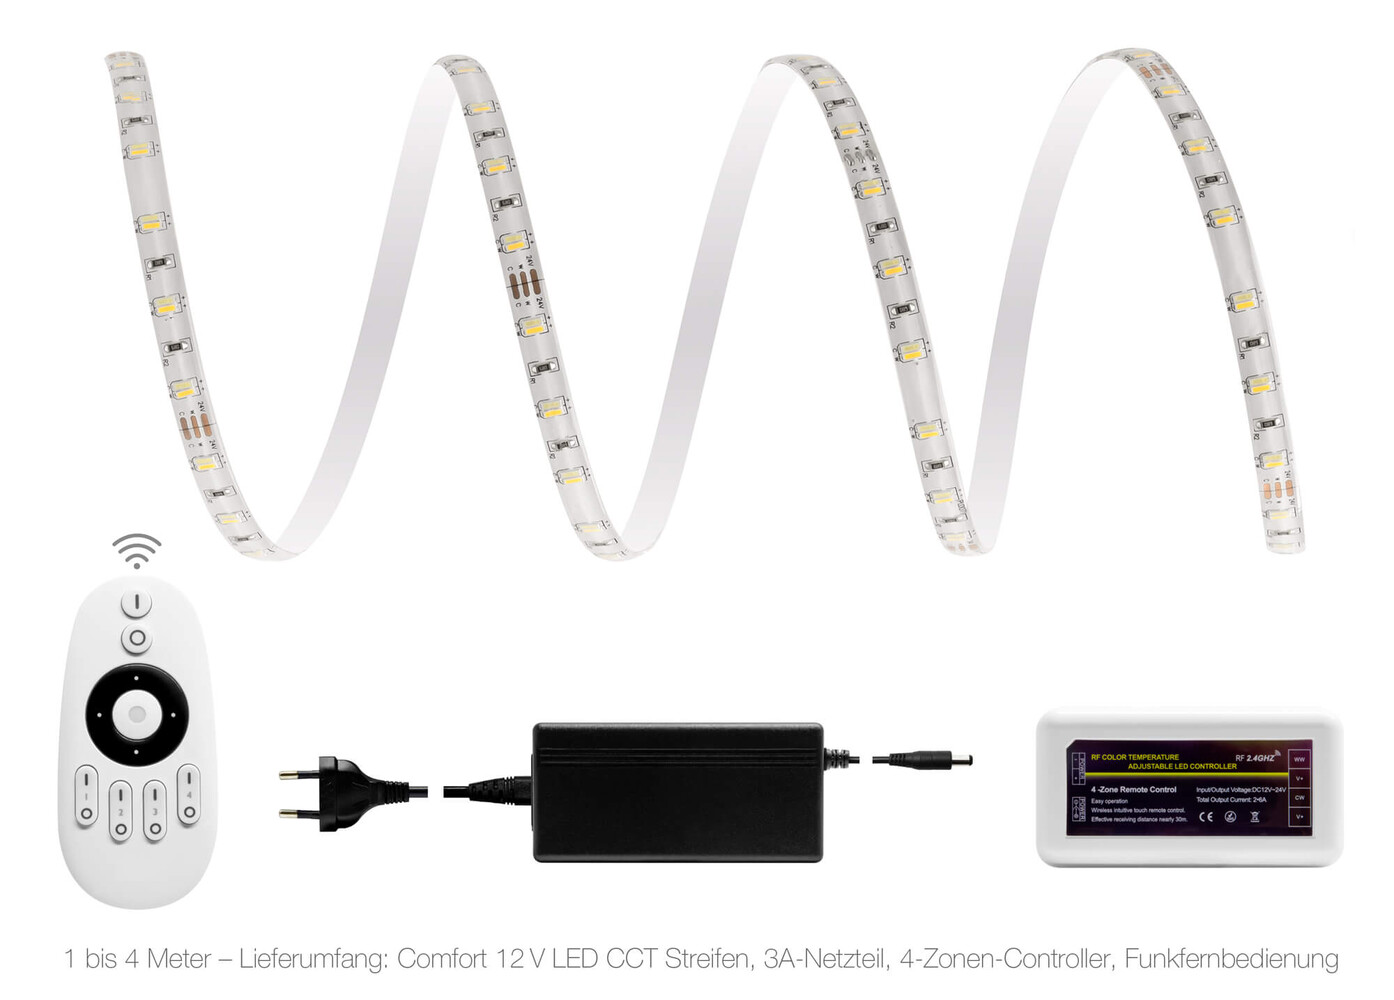 Hochwertiger, moderner LED Streifen von LED Universum mit innovativer langlebiger Funktechnologie und komfortabler Fernbedienung